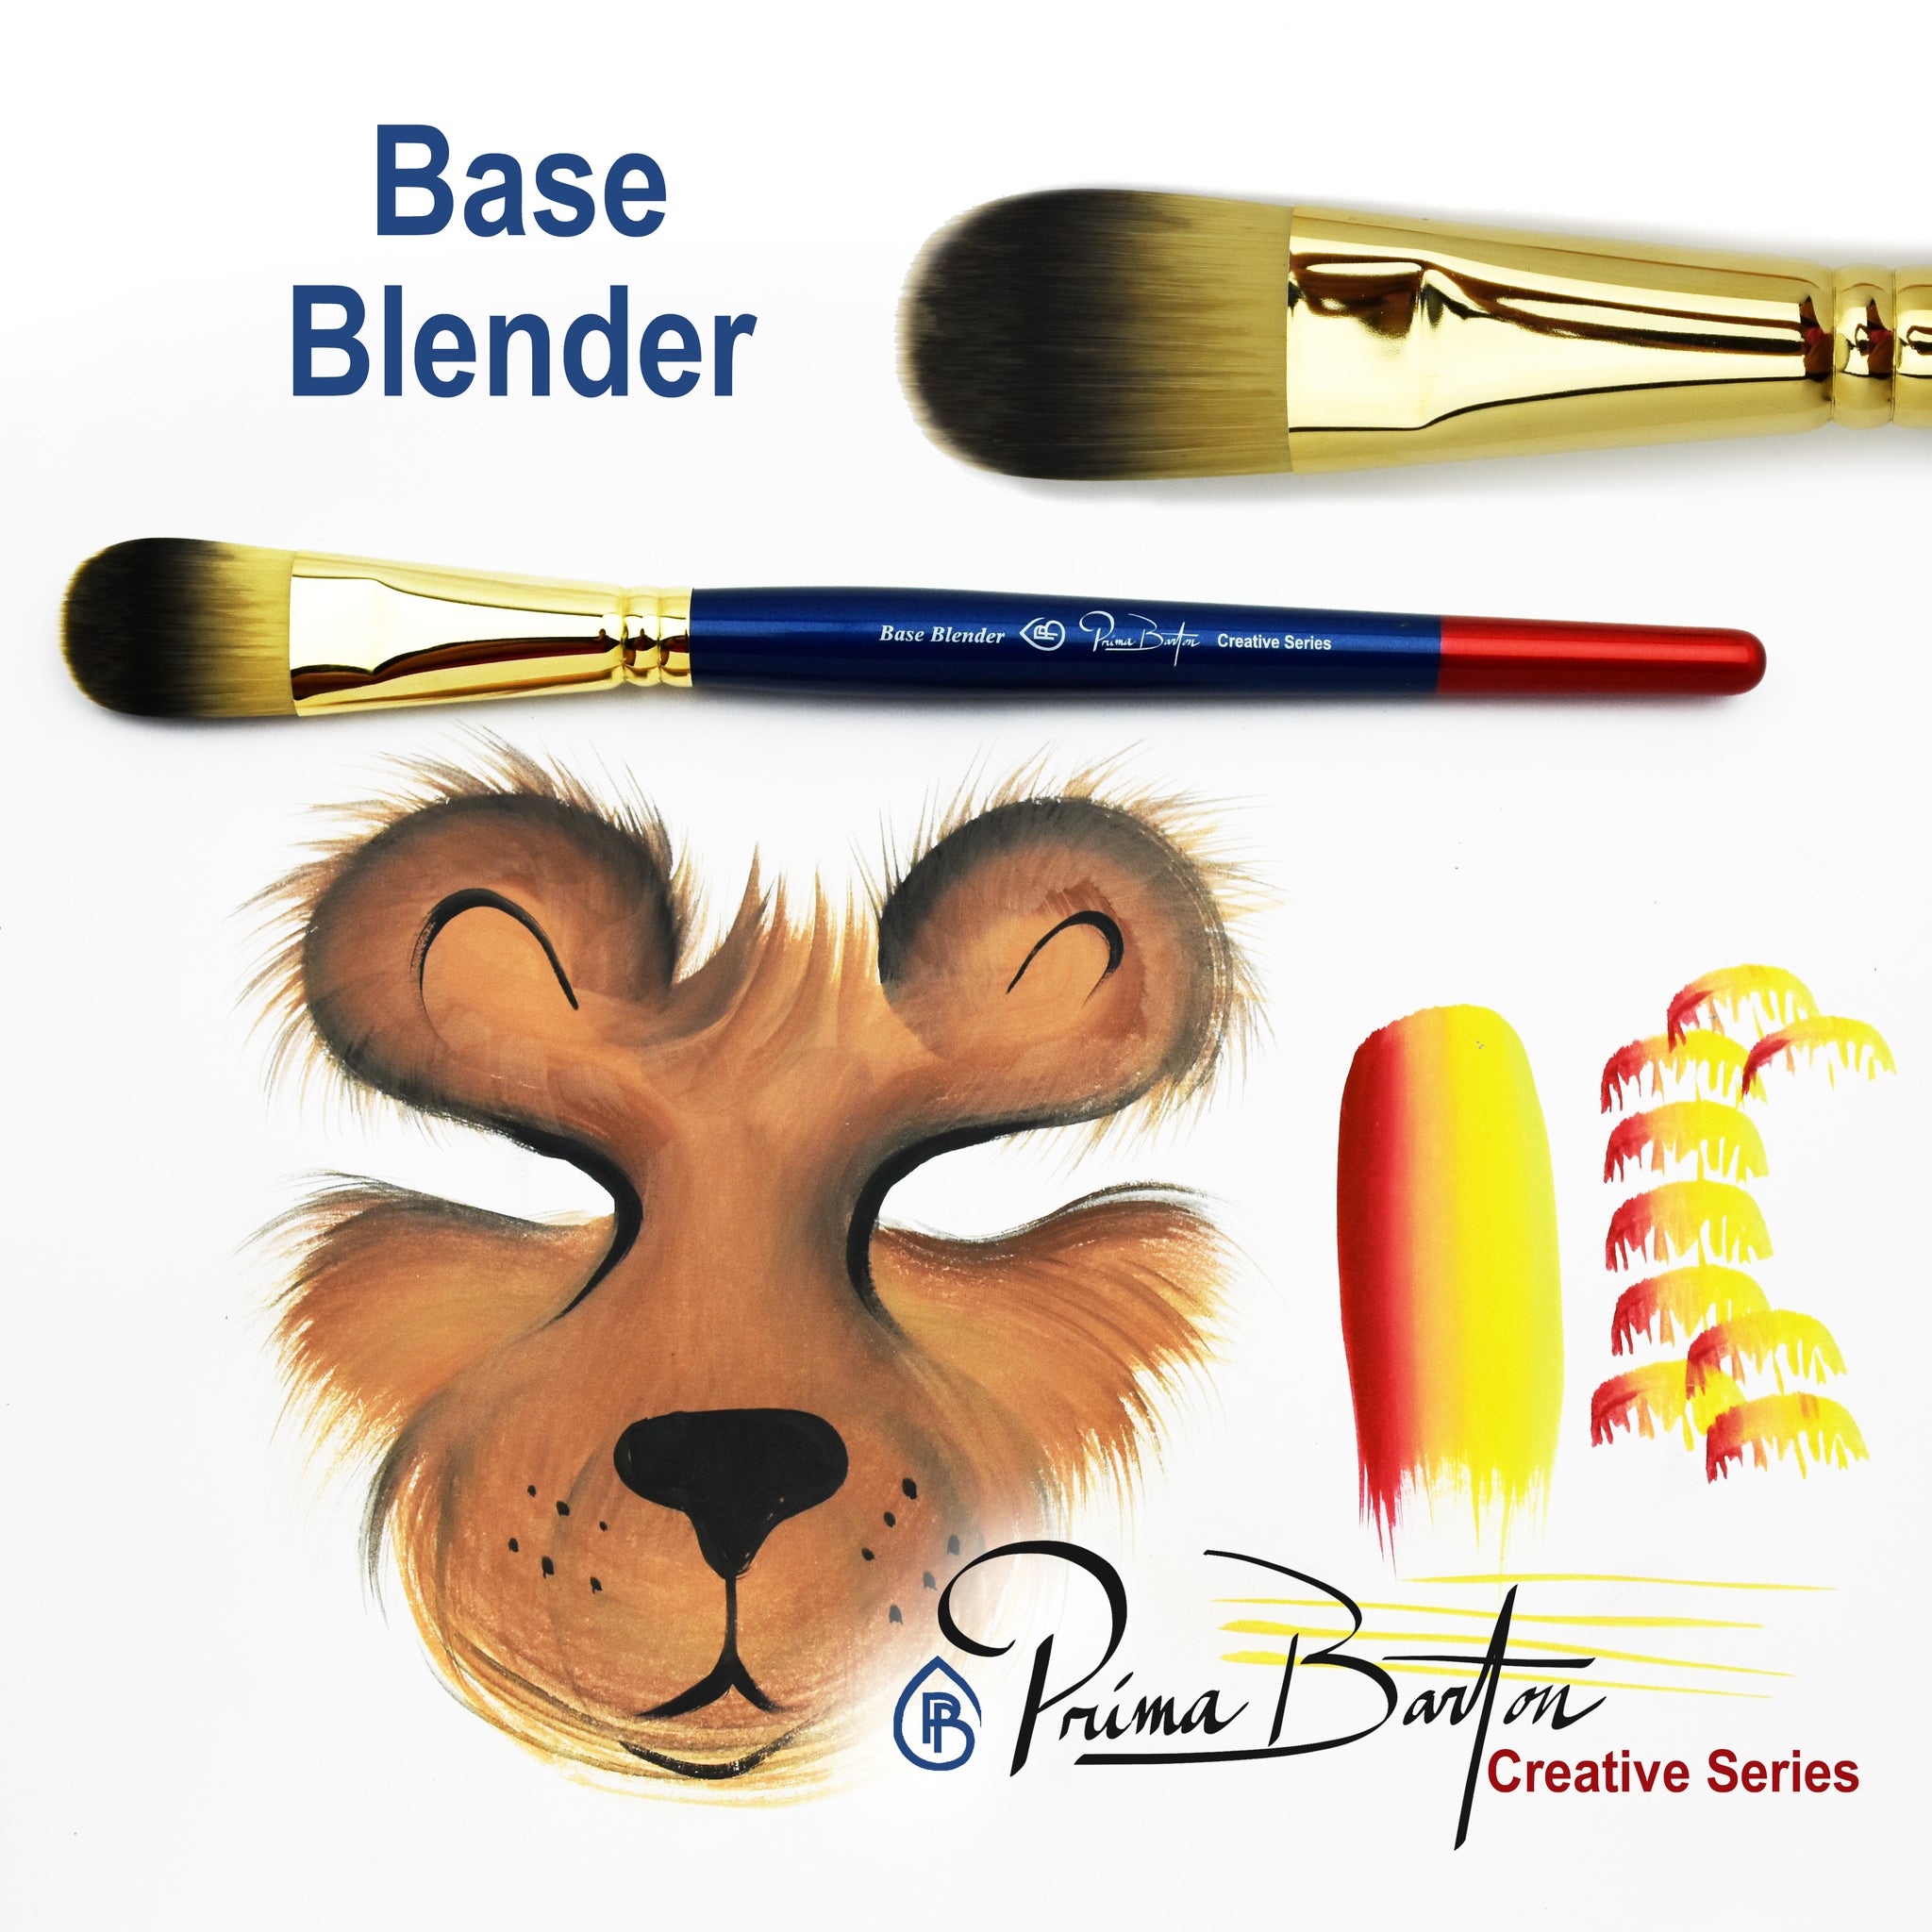 Prima Barton Brushes<br />Base Blender - Looney Bin Products 